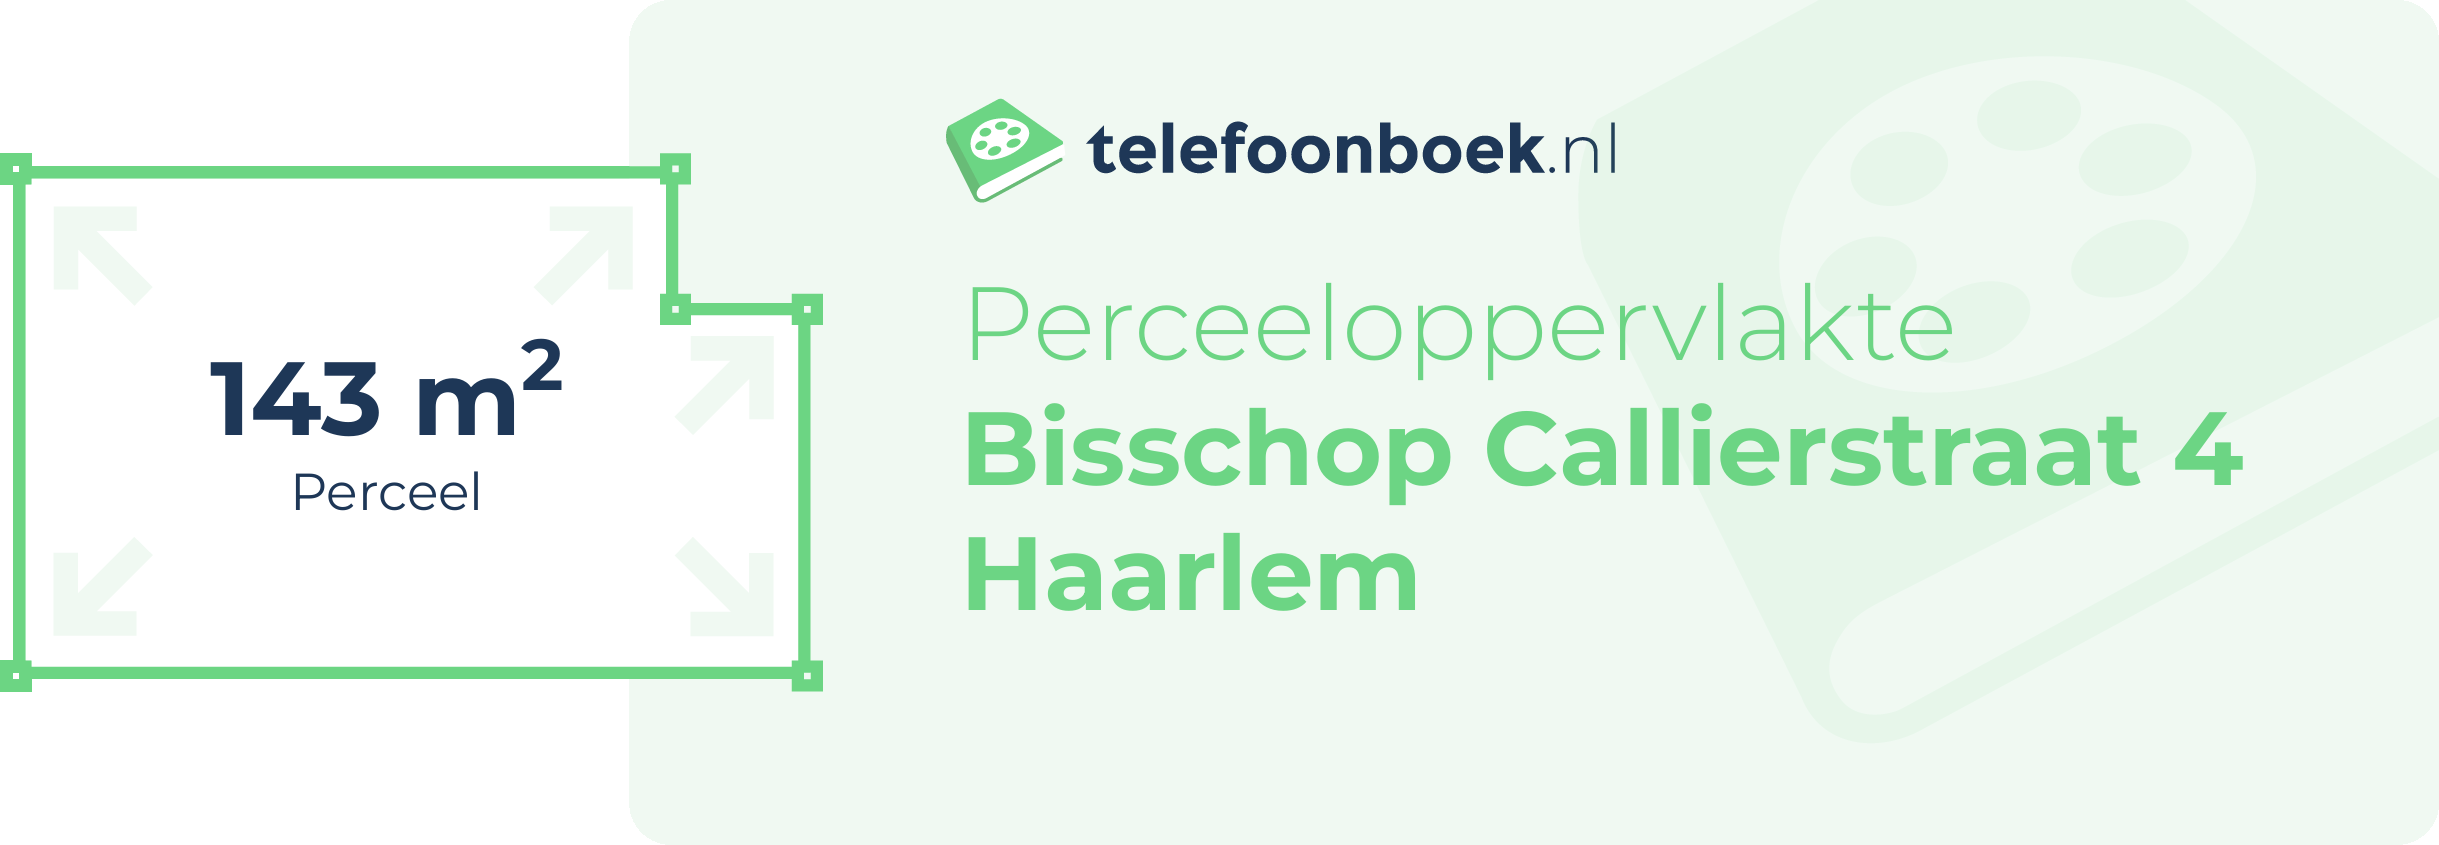 Perceeloppervlakte Bisschop Callierstraat 4 Haarlem